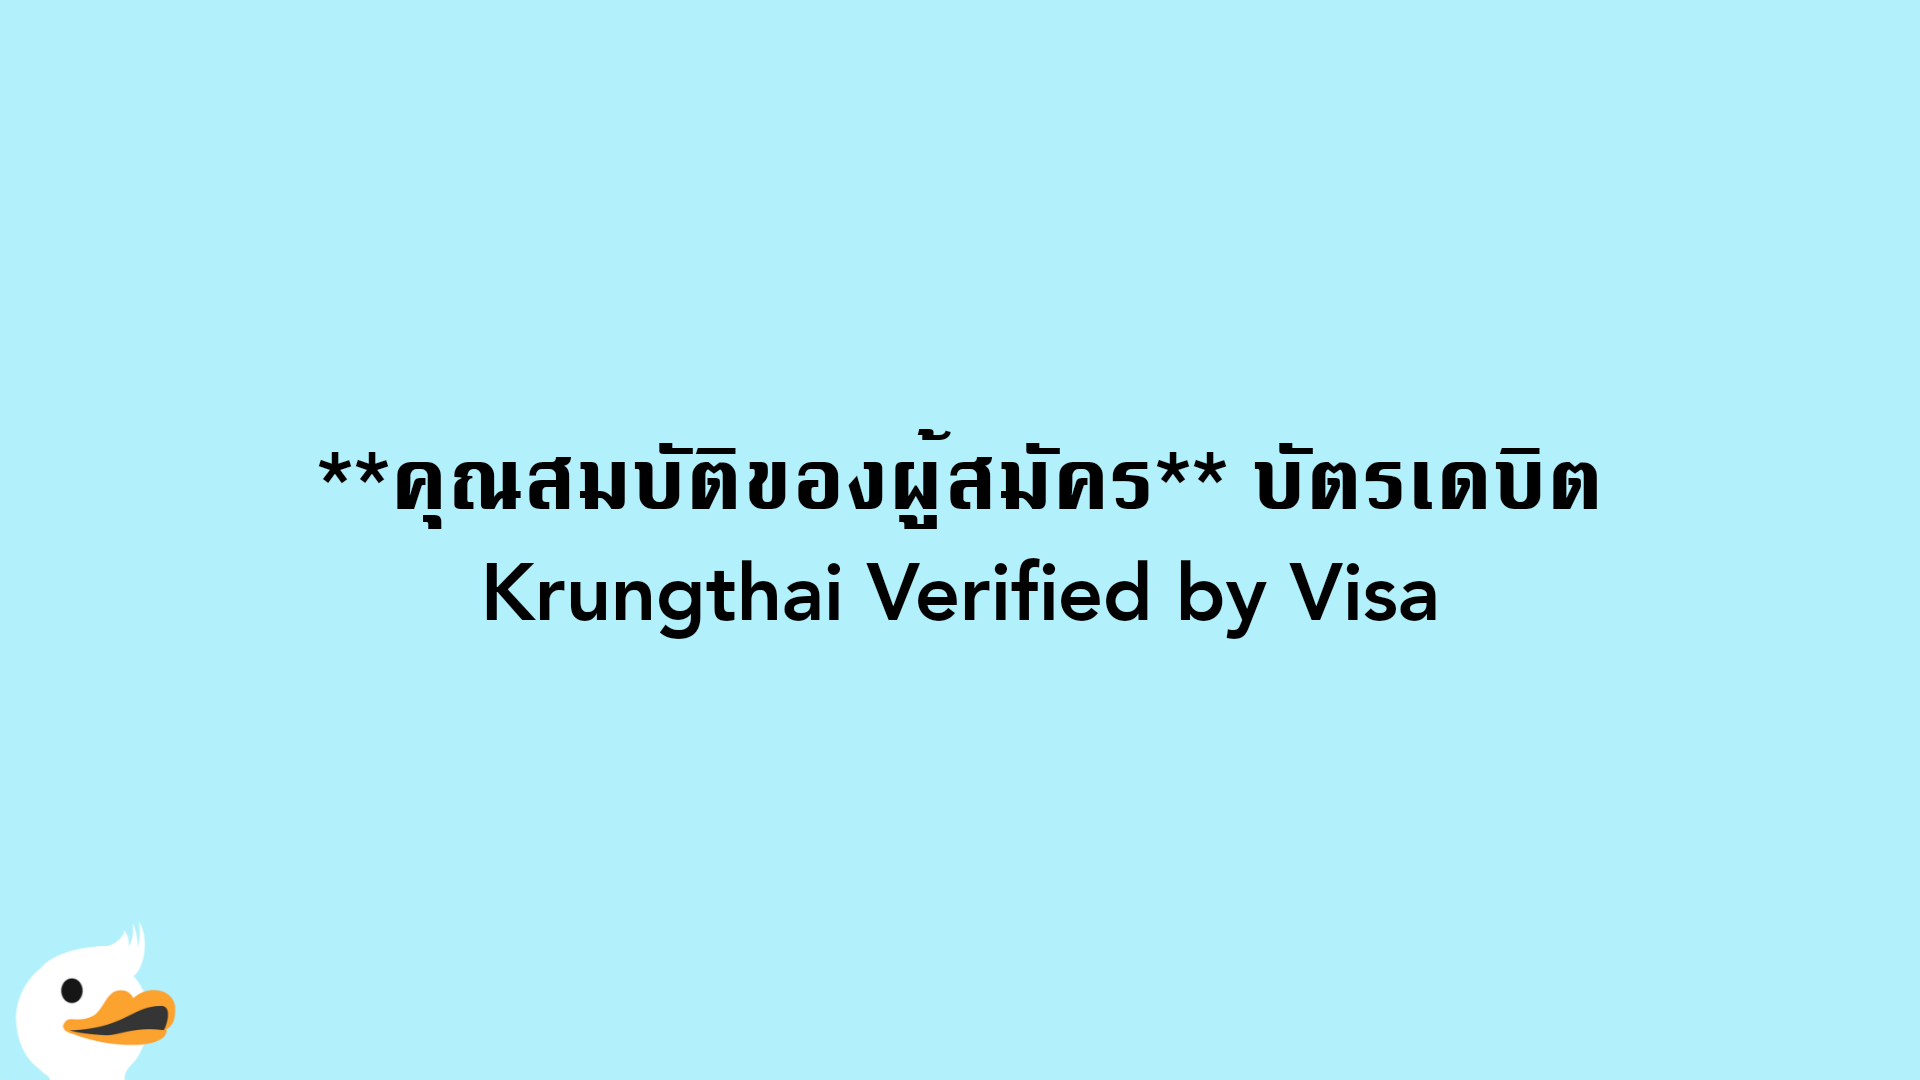 คุณสมบัติของผู้สมัคร บัตรเดบิตKrungthai Verified by Visa